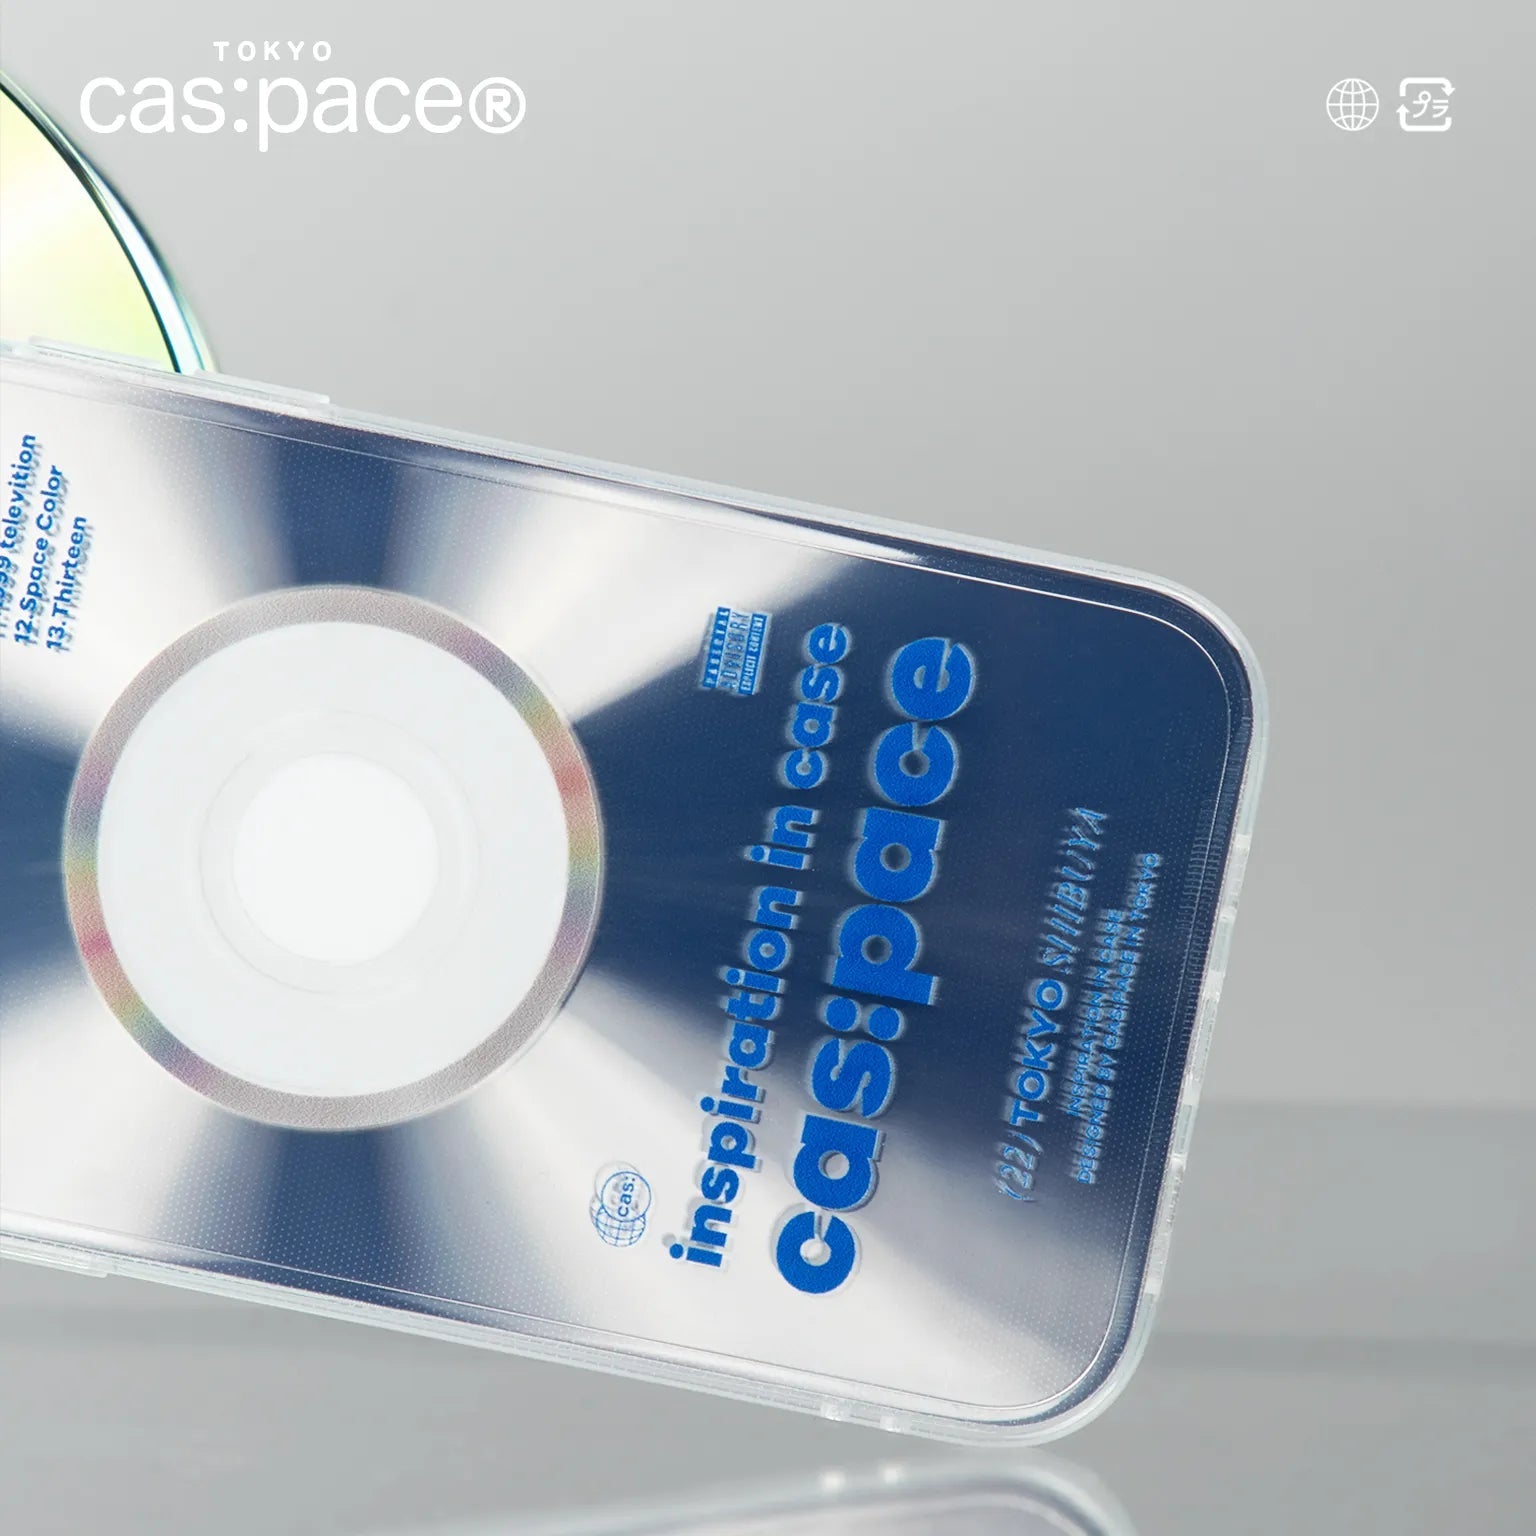 cas:pace 22S/S「cas:pace CD」携帯ケース - cas:pace 殼空間